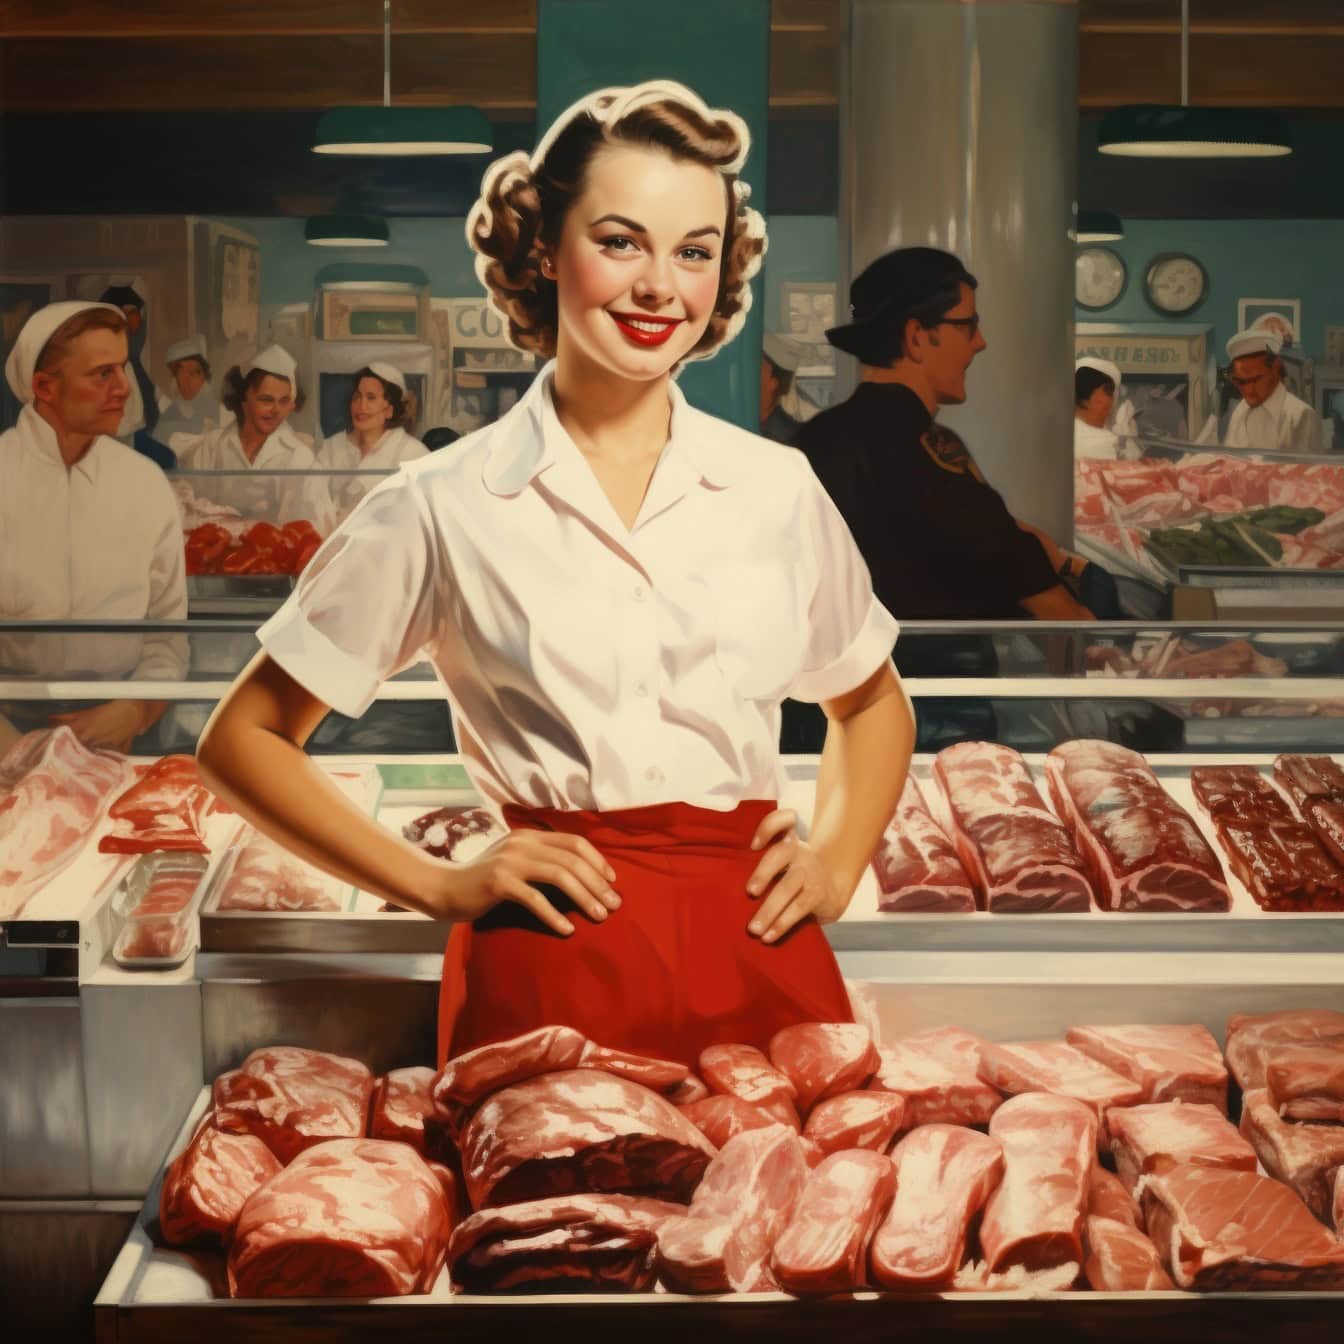 在肉店或超市里站在肉面前的屠夫女工，这是 1960 年代风格的插图